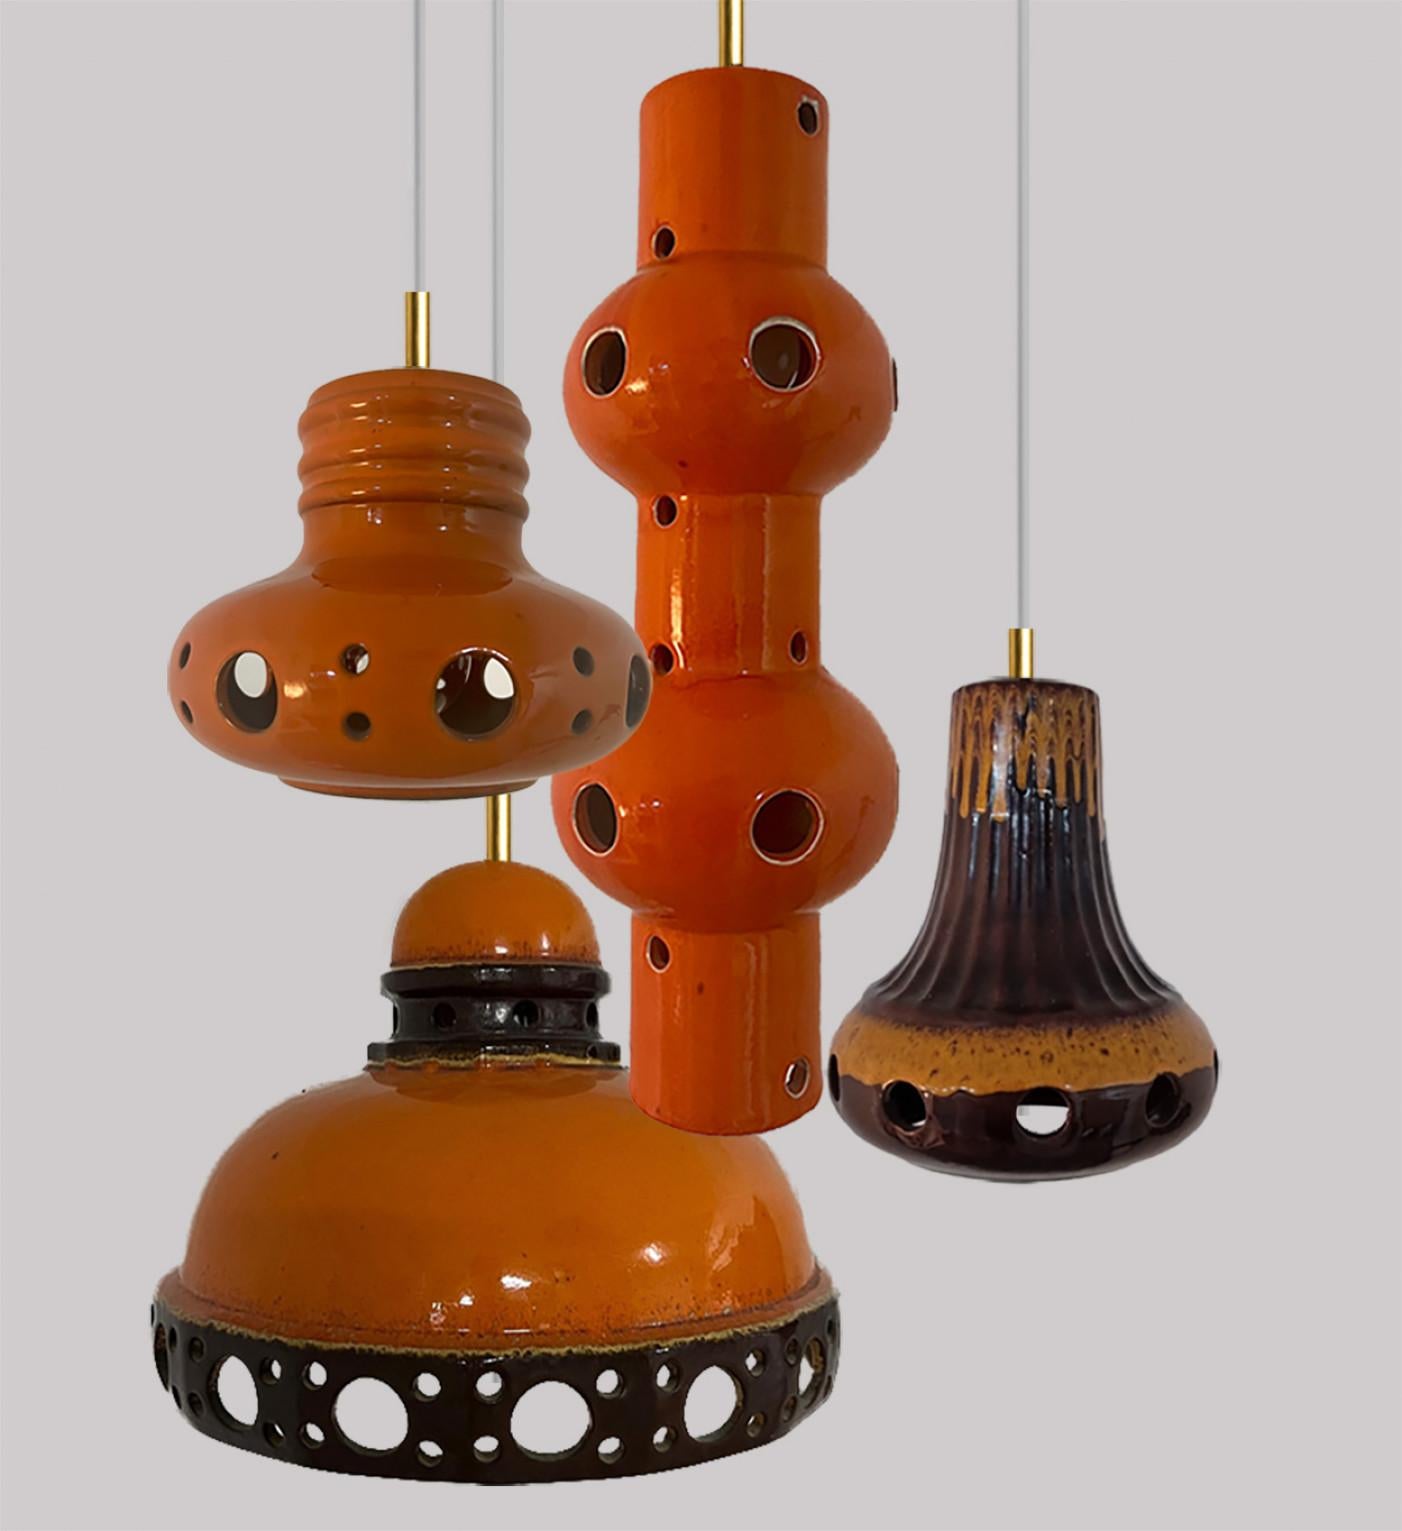 Un ensemble de lampes suspendues en céramique, spectaculaires et élégantes, fabriquées en Allemagne de l'Ouest vers les années 1970. Les lampes sont fabriquées en céramique émaillée orange et marron et émaillées dans le style 